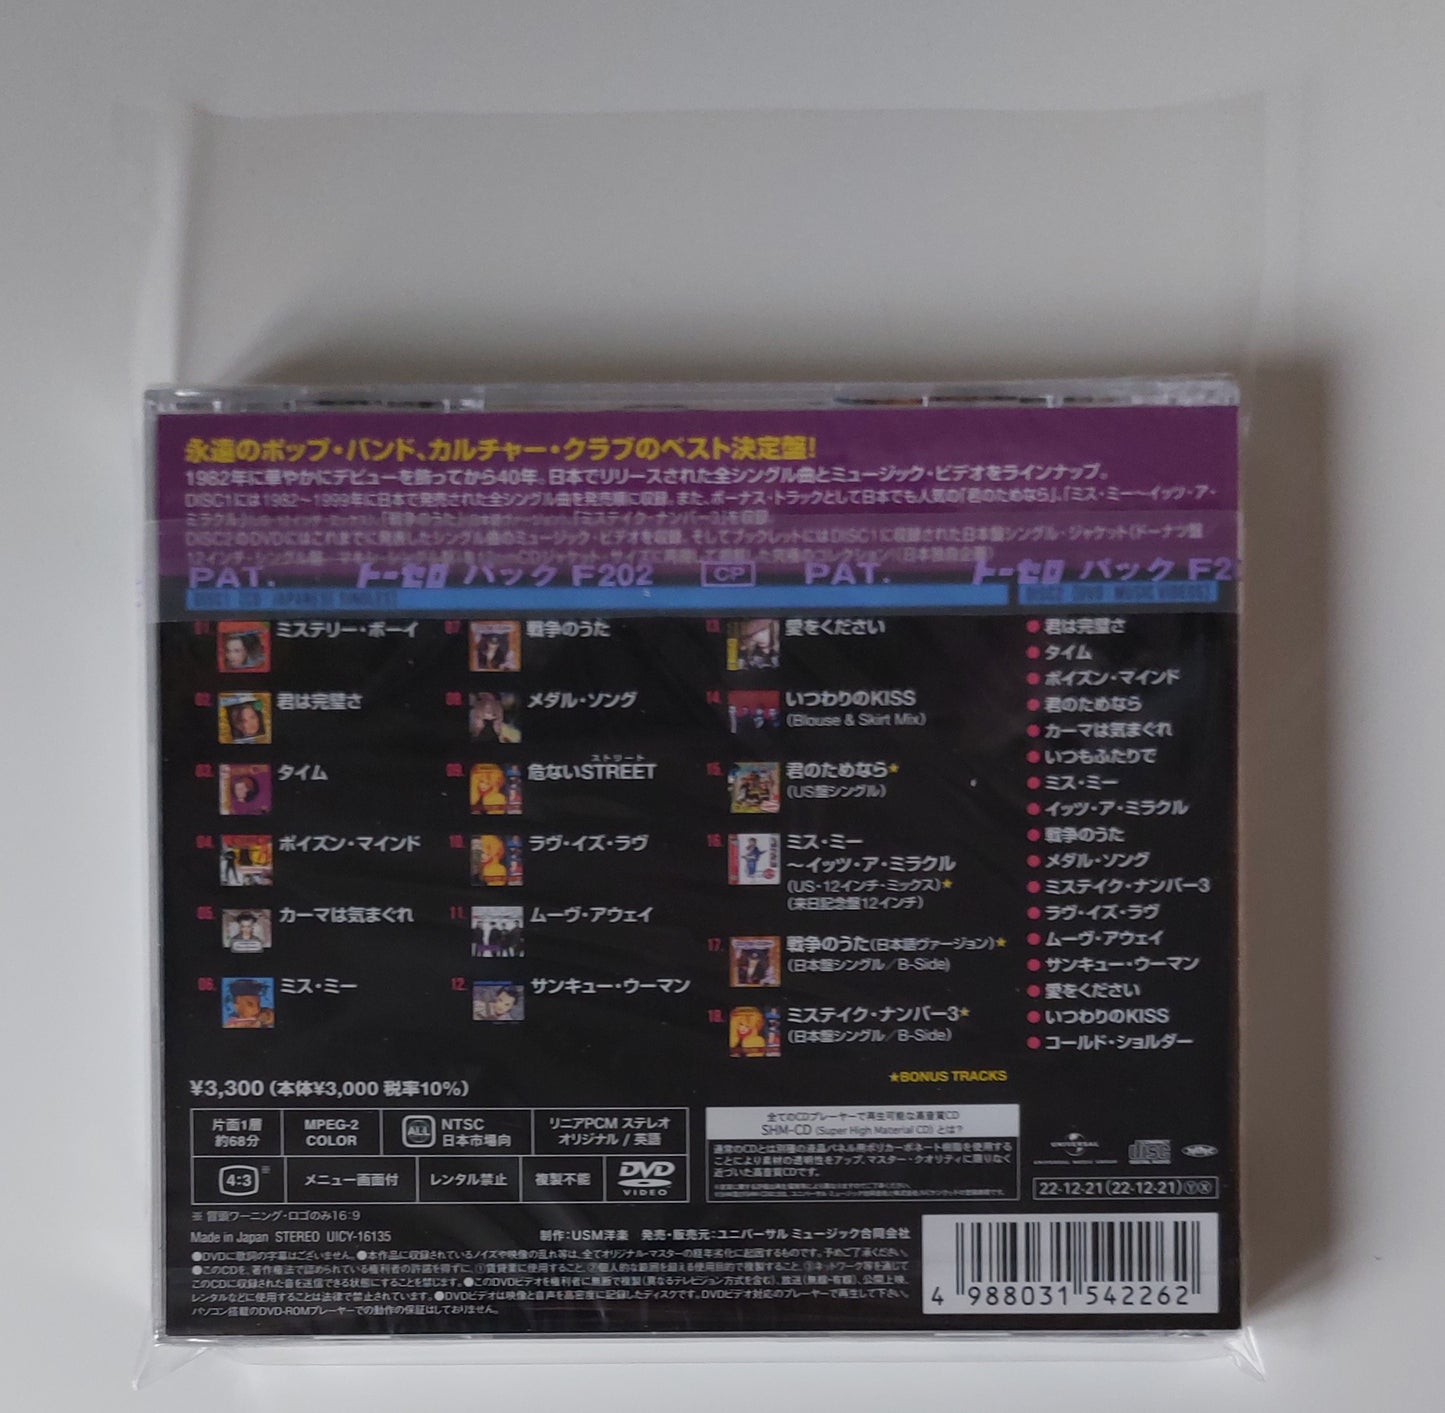 10 CD Jewel Case pochettes japonaises refermables